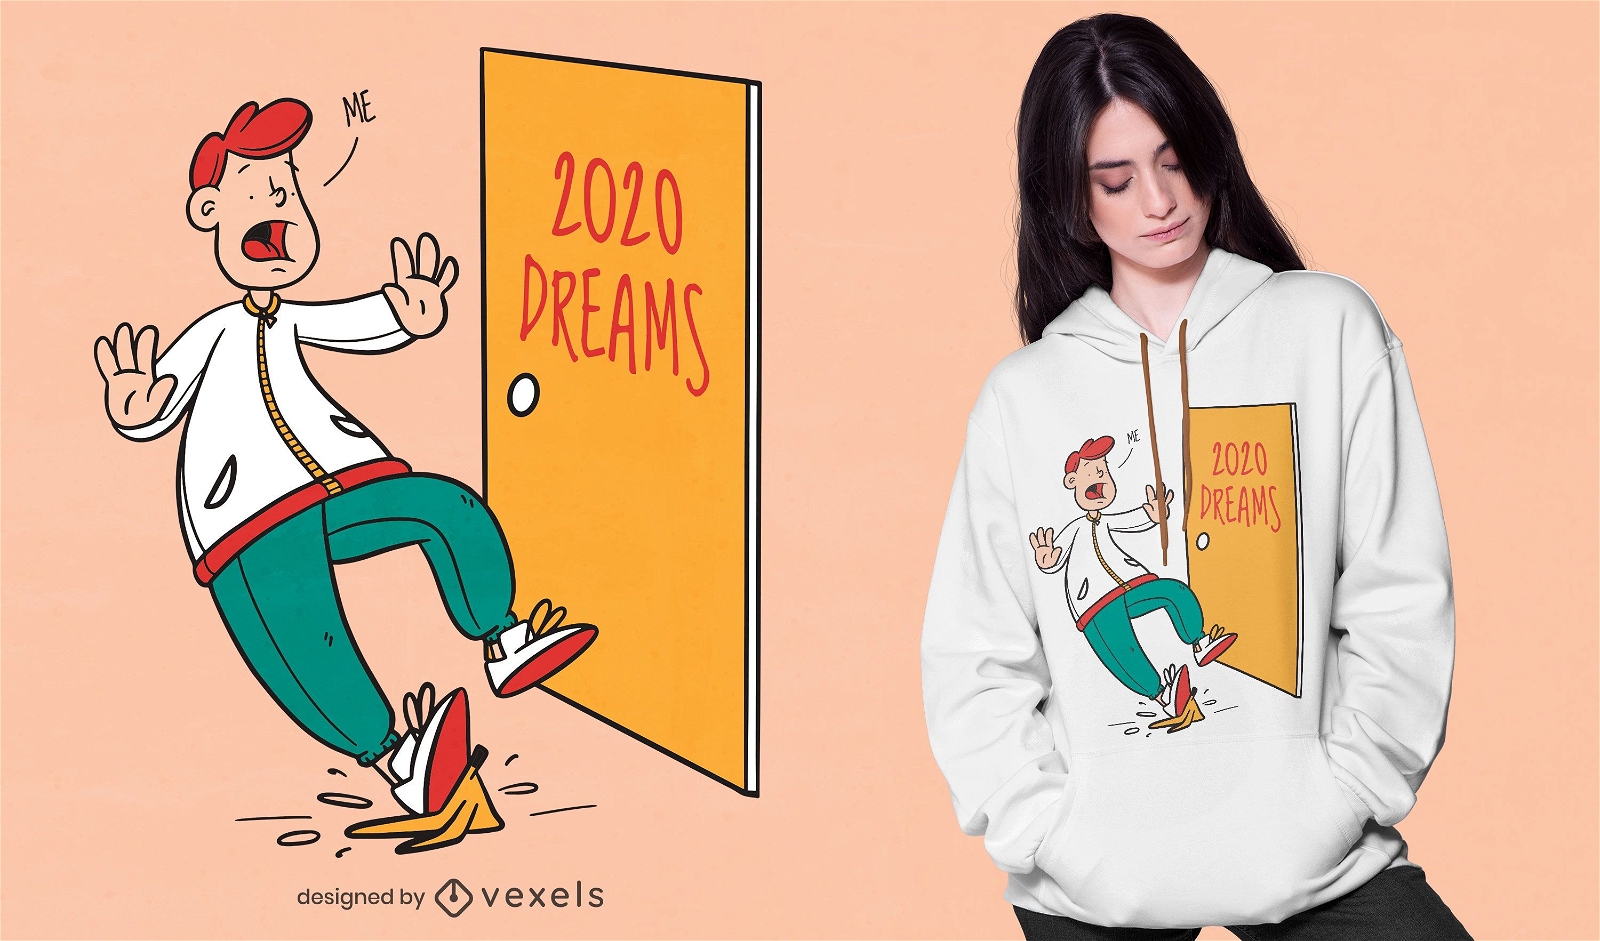 2020 dreams t-shirt design